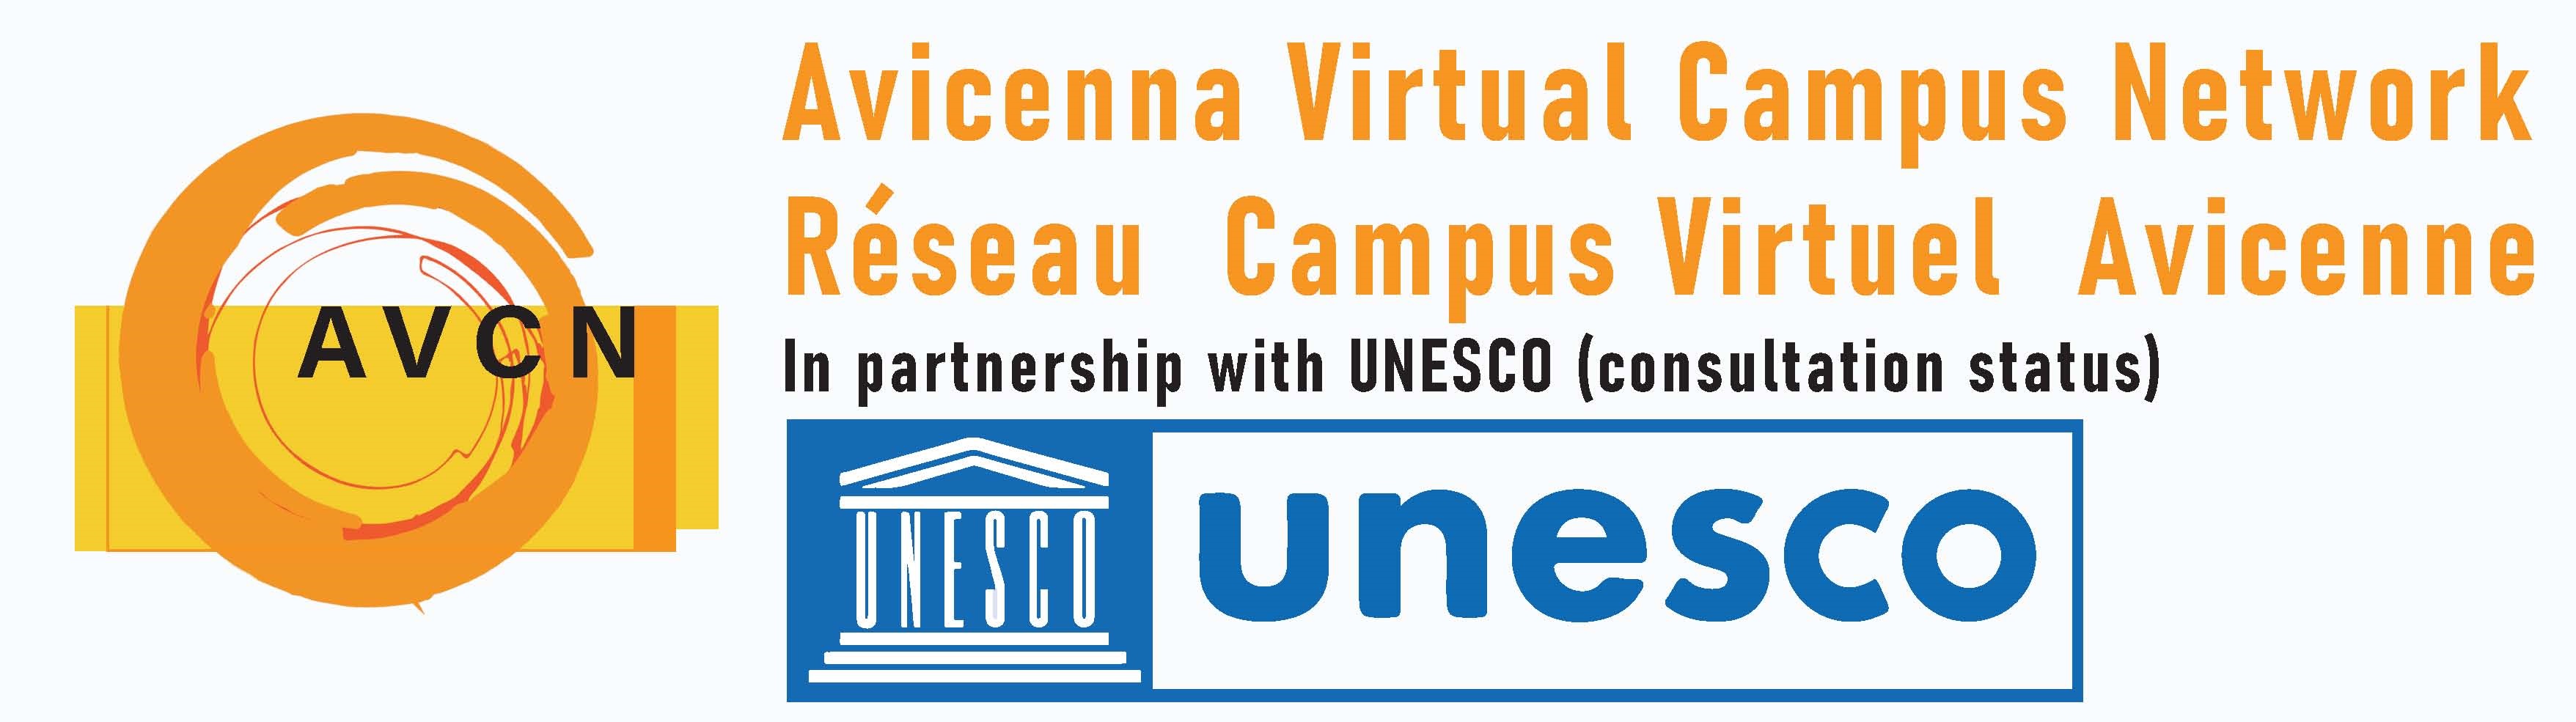  AVCN UNESCO  